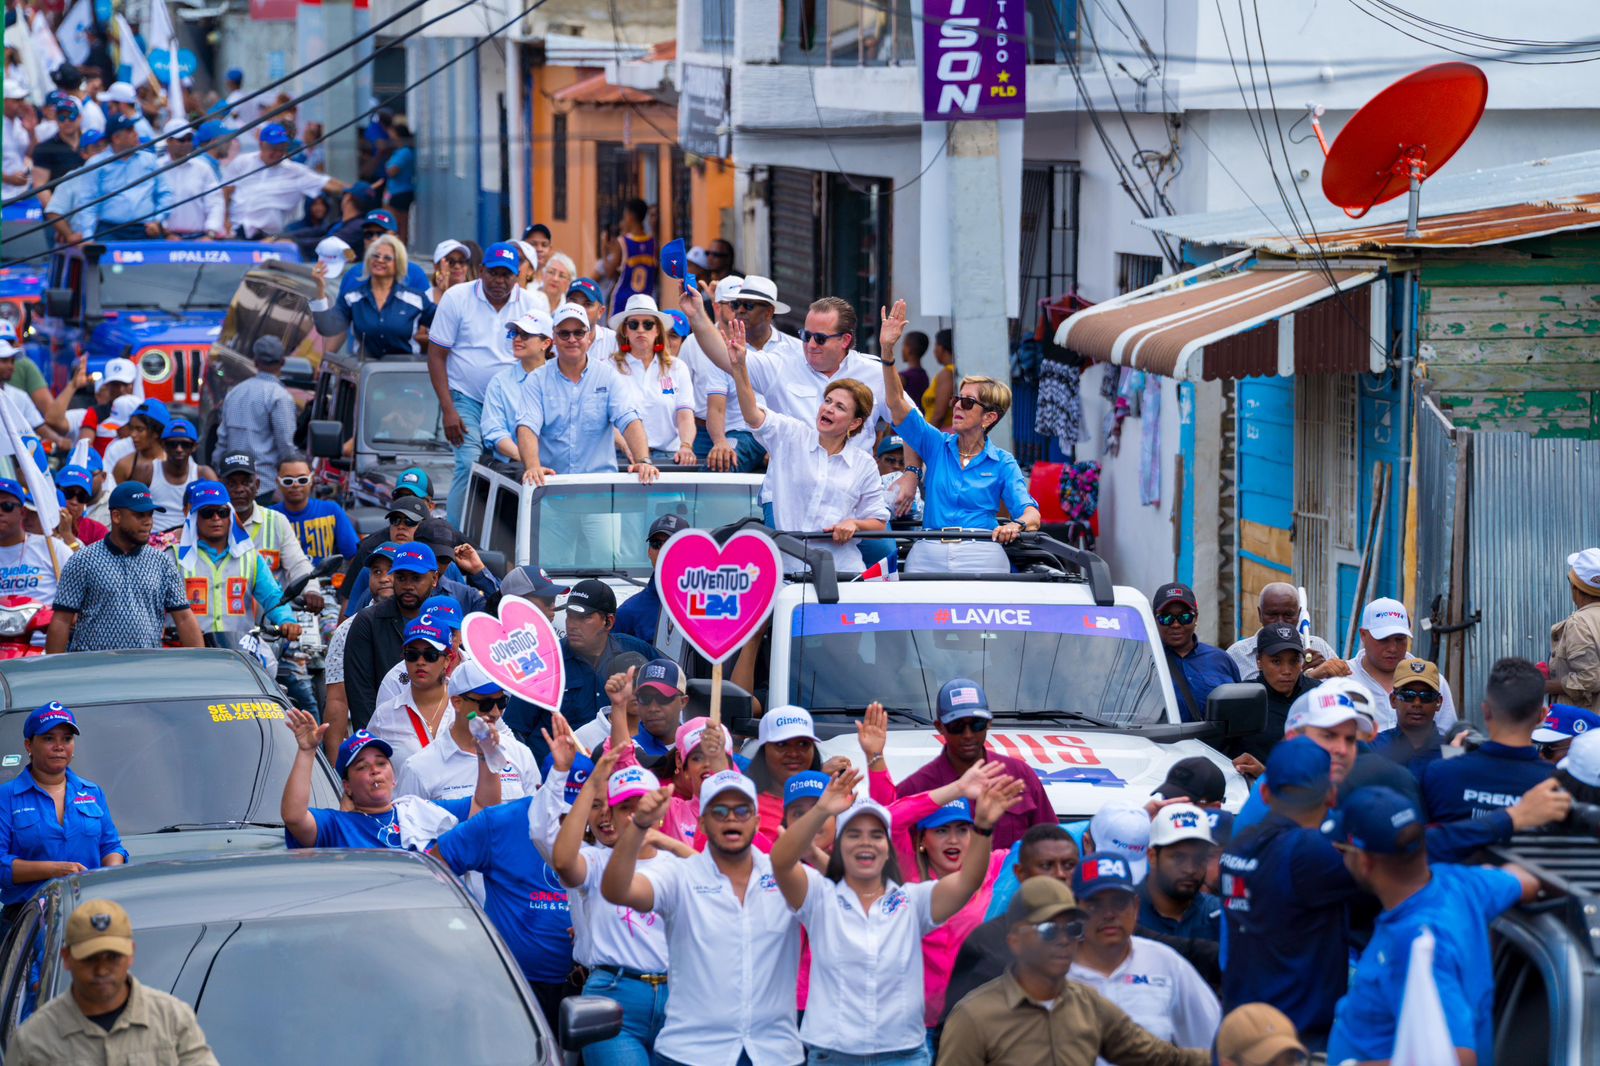  Raquel Peña: “el triunfo está sellado, los dominicanos saldrán a votar por Luis Abinader el próximo domingo 19 de mayo”